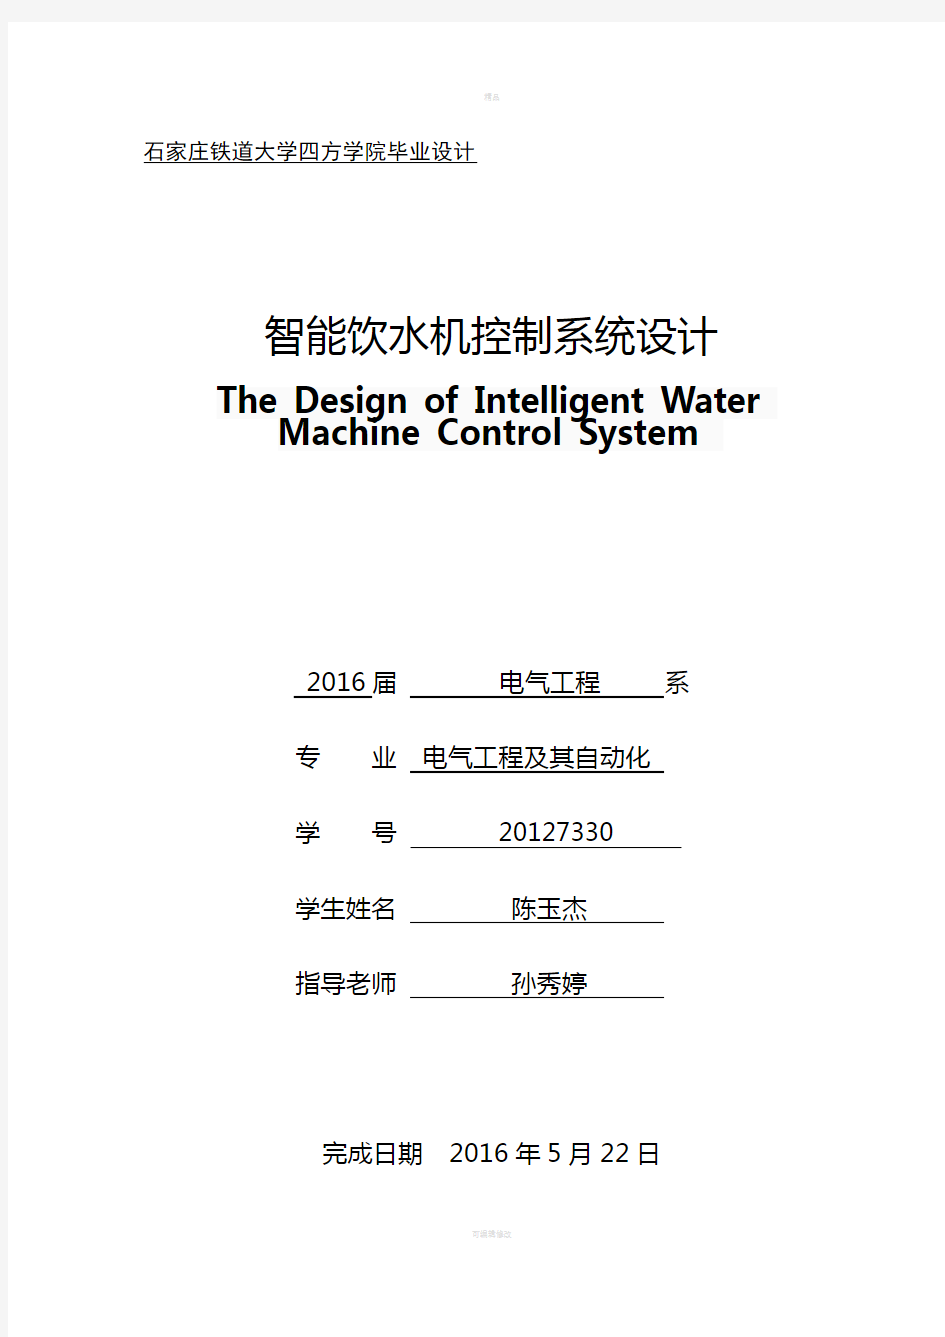 陈玉杰-智能饮水机控制系统设计11